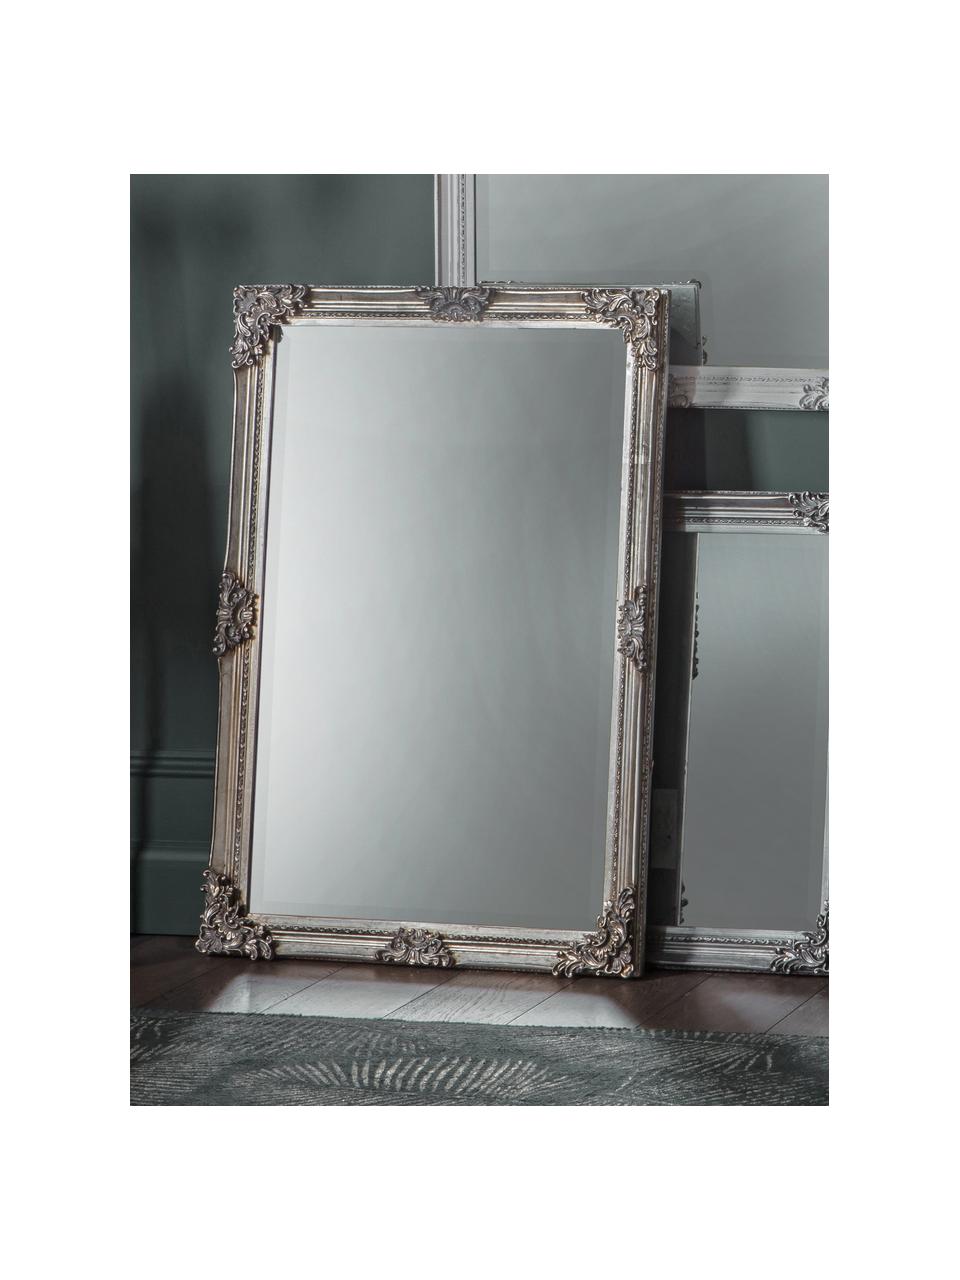 Barokní obdélníkové nástěnné zrcadlo Fiennes, Stříbrná, Š 70 cm, V 103 cm